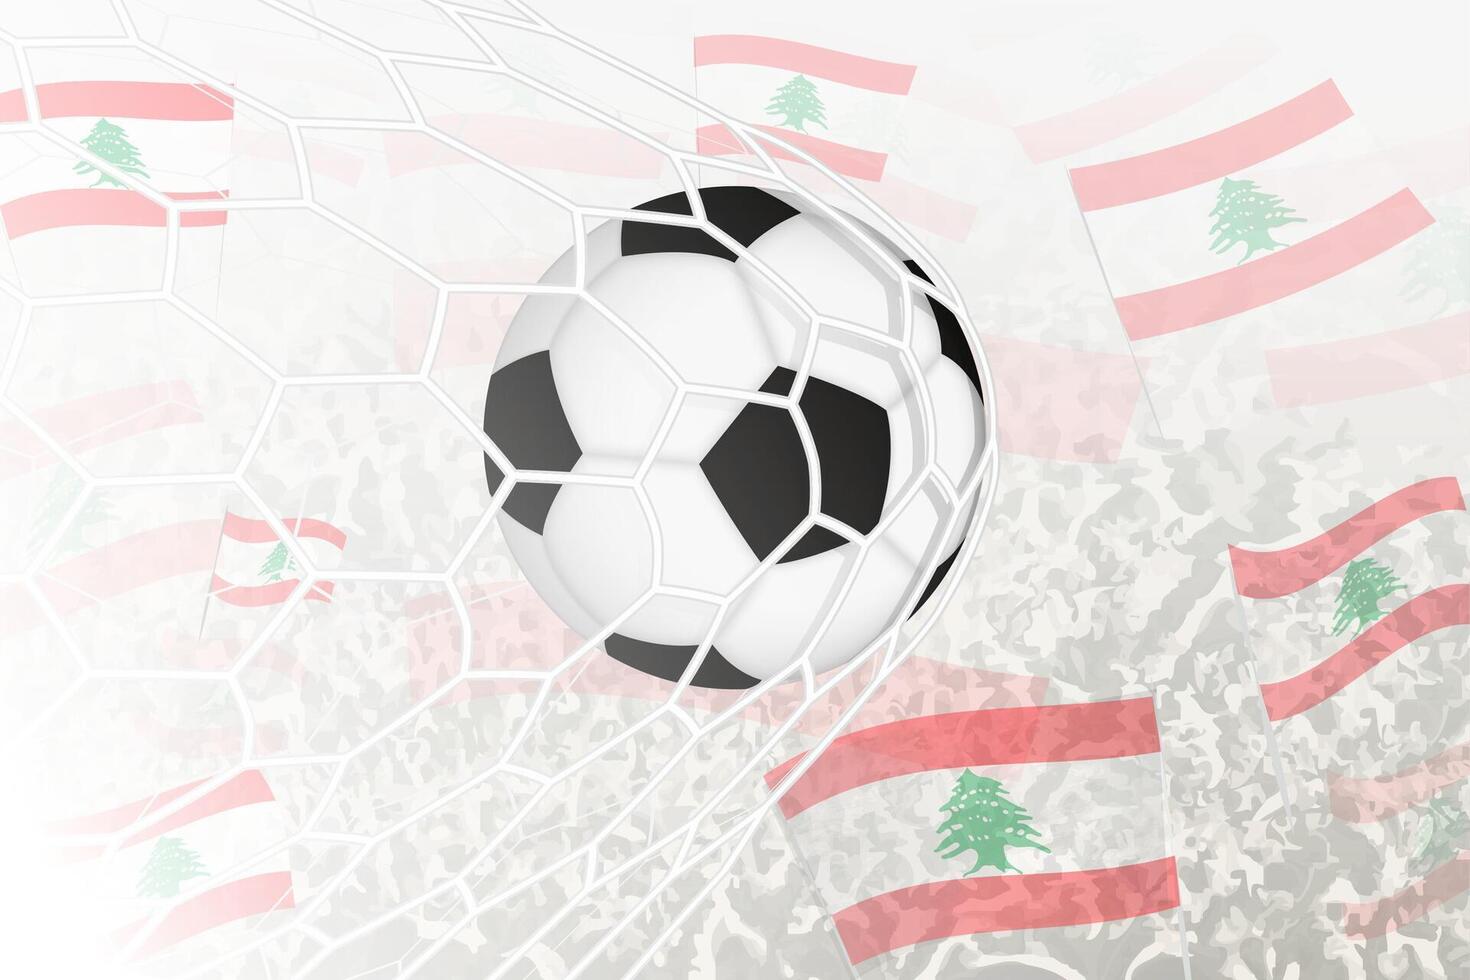 nationaal Amerikaans voetbal team van Libanon scoorde doel. bal in doel netto, terwijl Amerikaans voetbal supporters zijn golvend de Libanon vlag in de achtergrond. vector